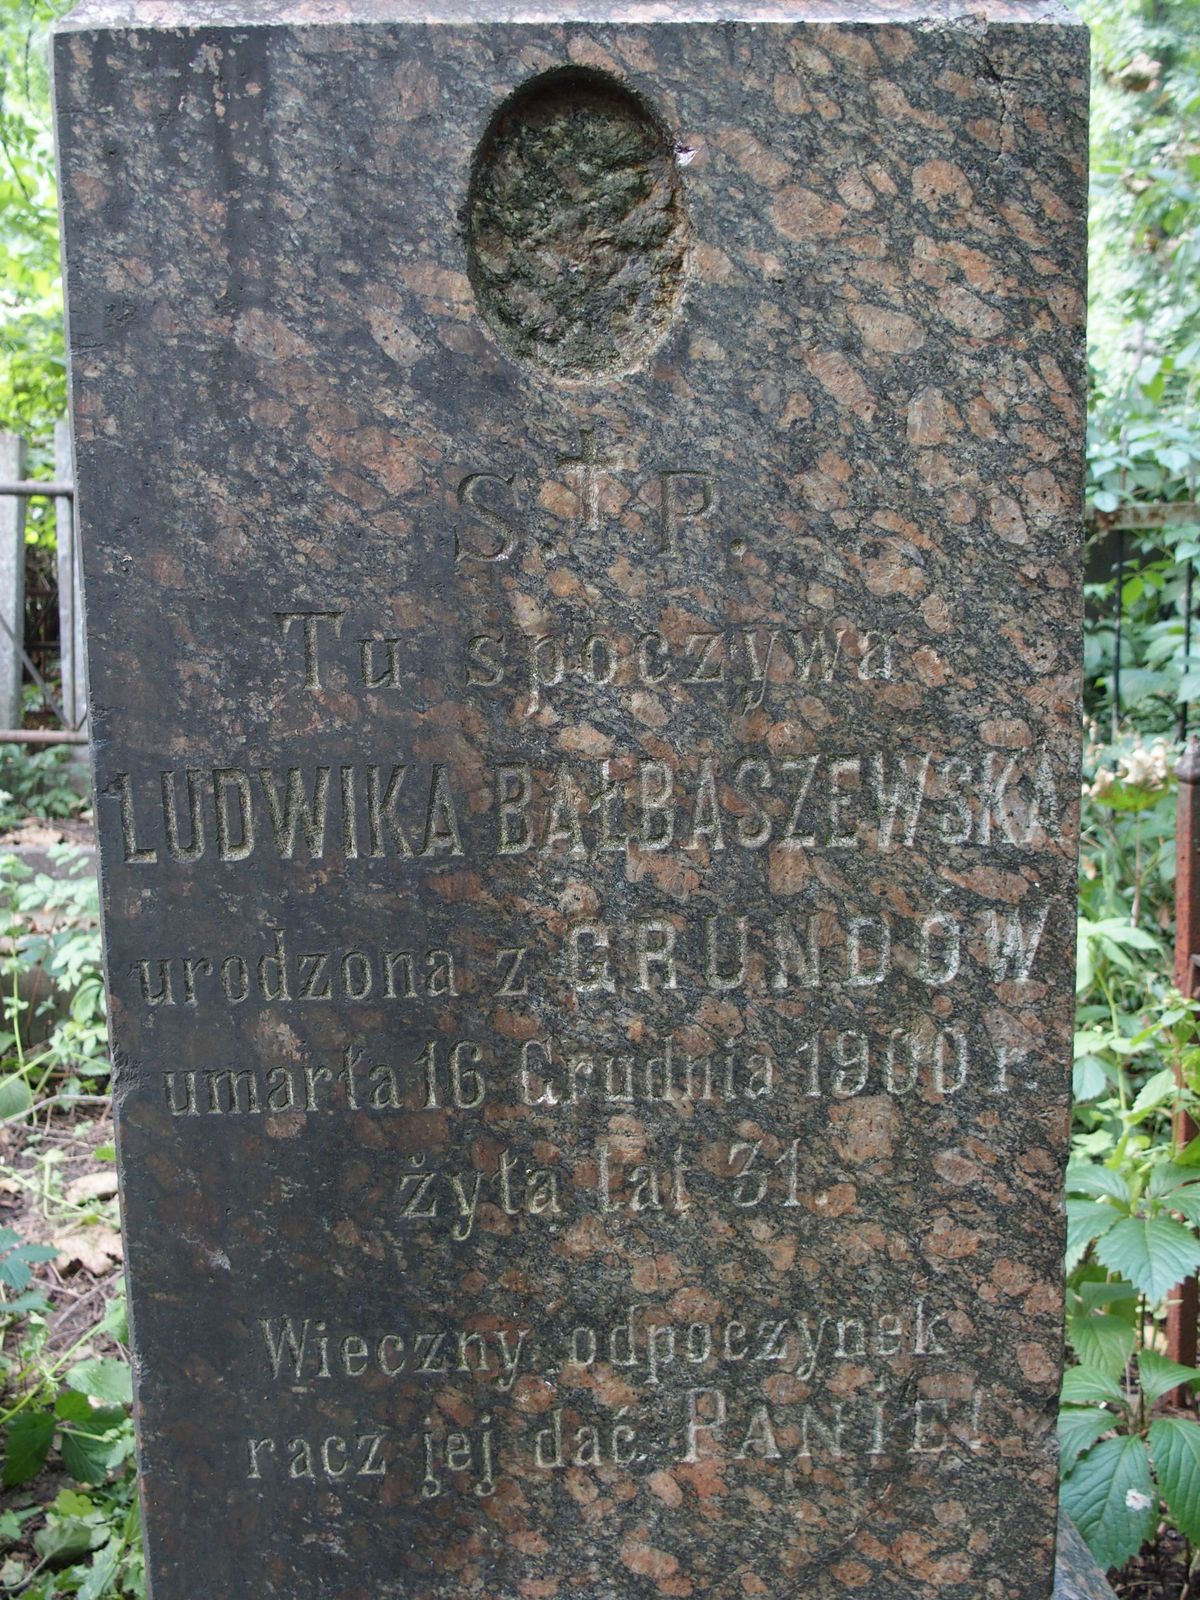 Napis z nagrobka Ludwiki Bałbaszewskiej, cmentarz Bajkowa w Kijowie, stan z 2021